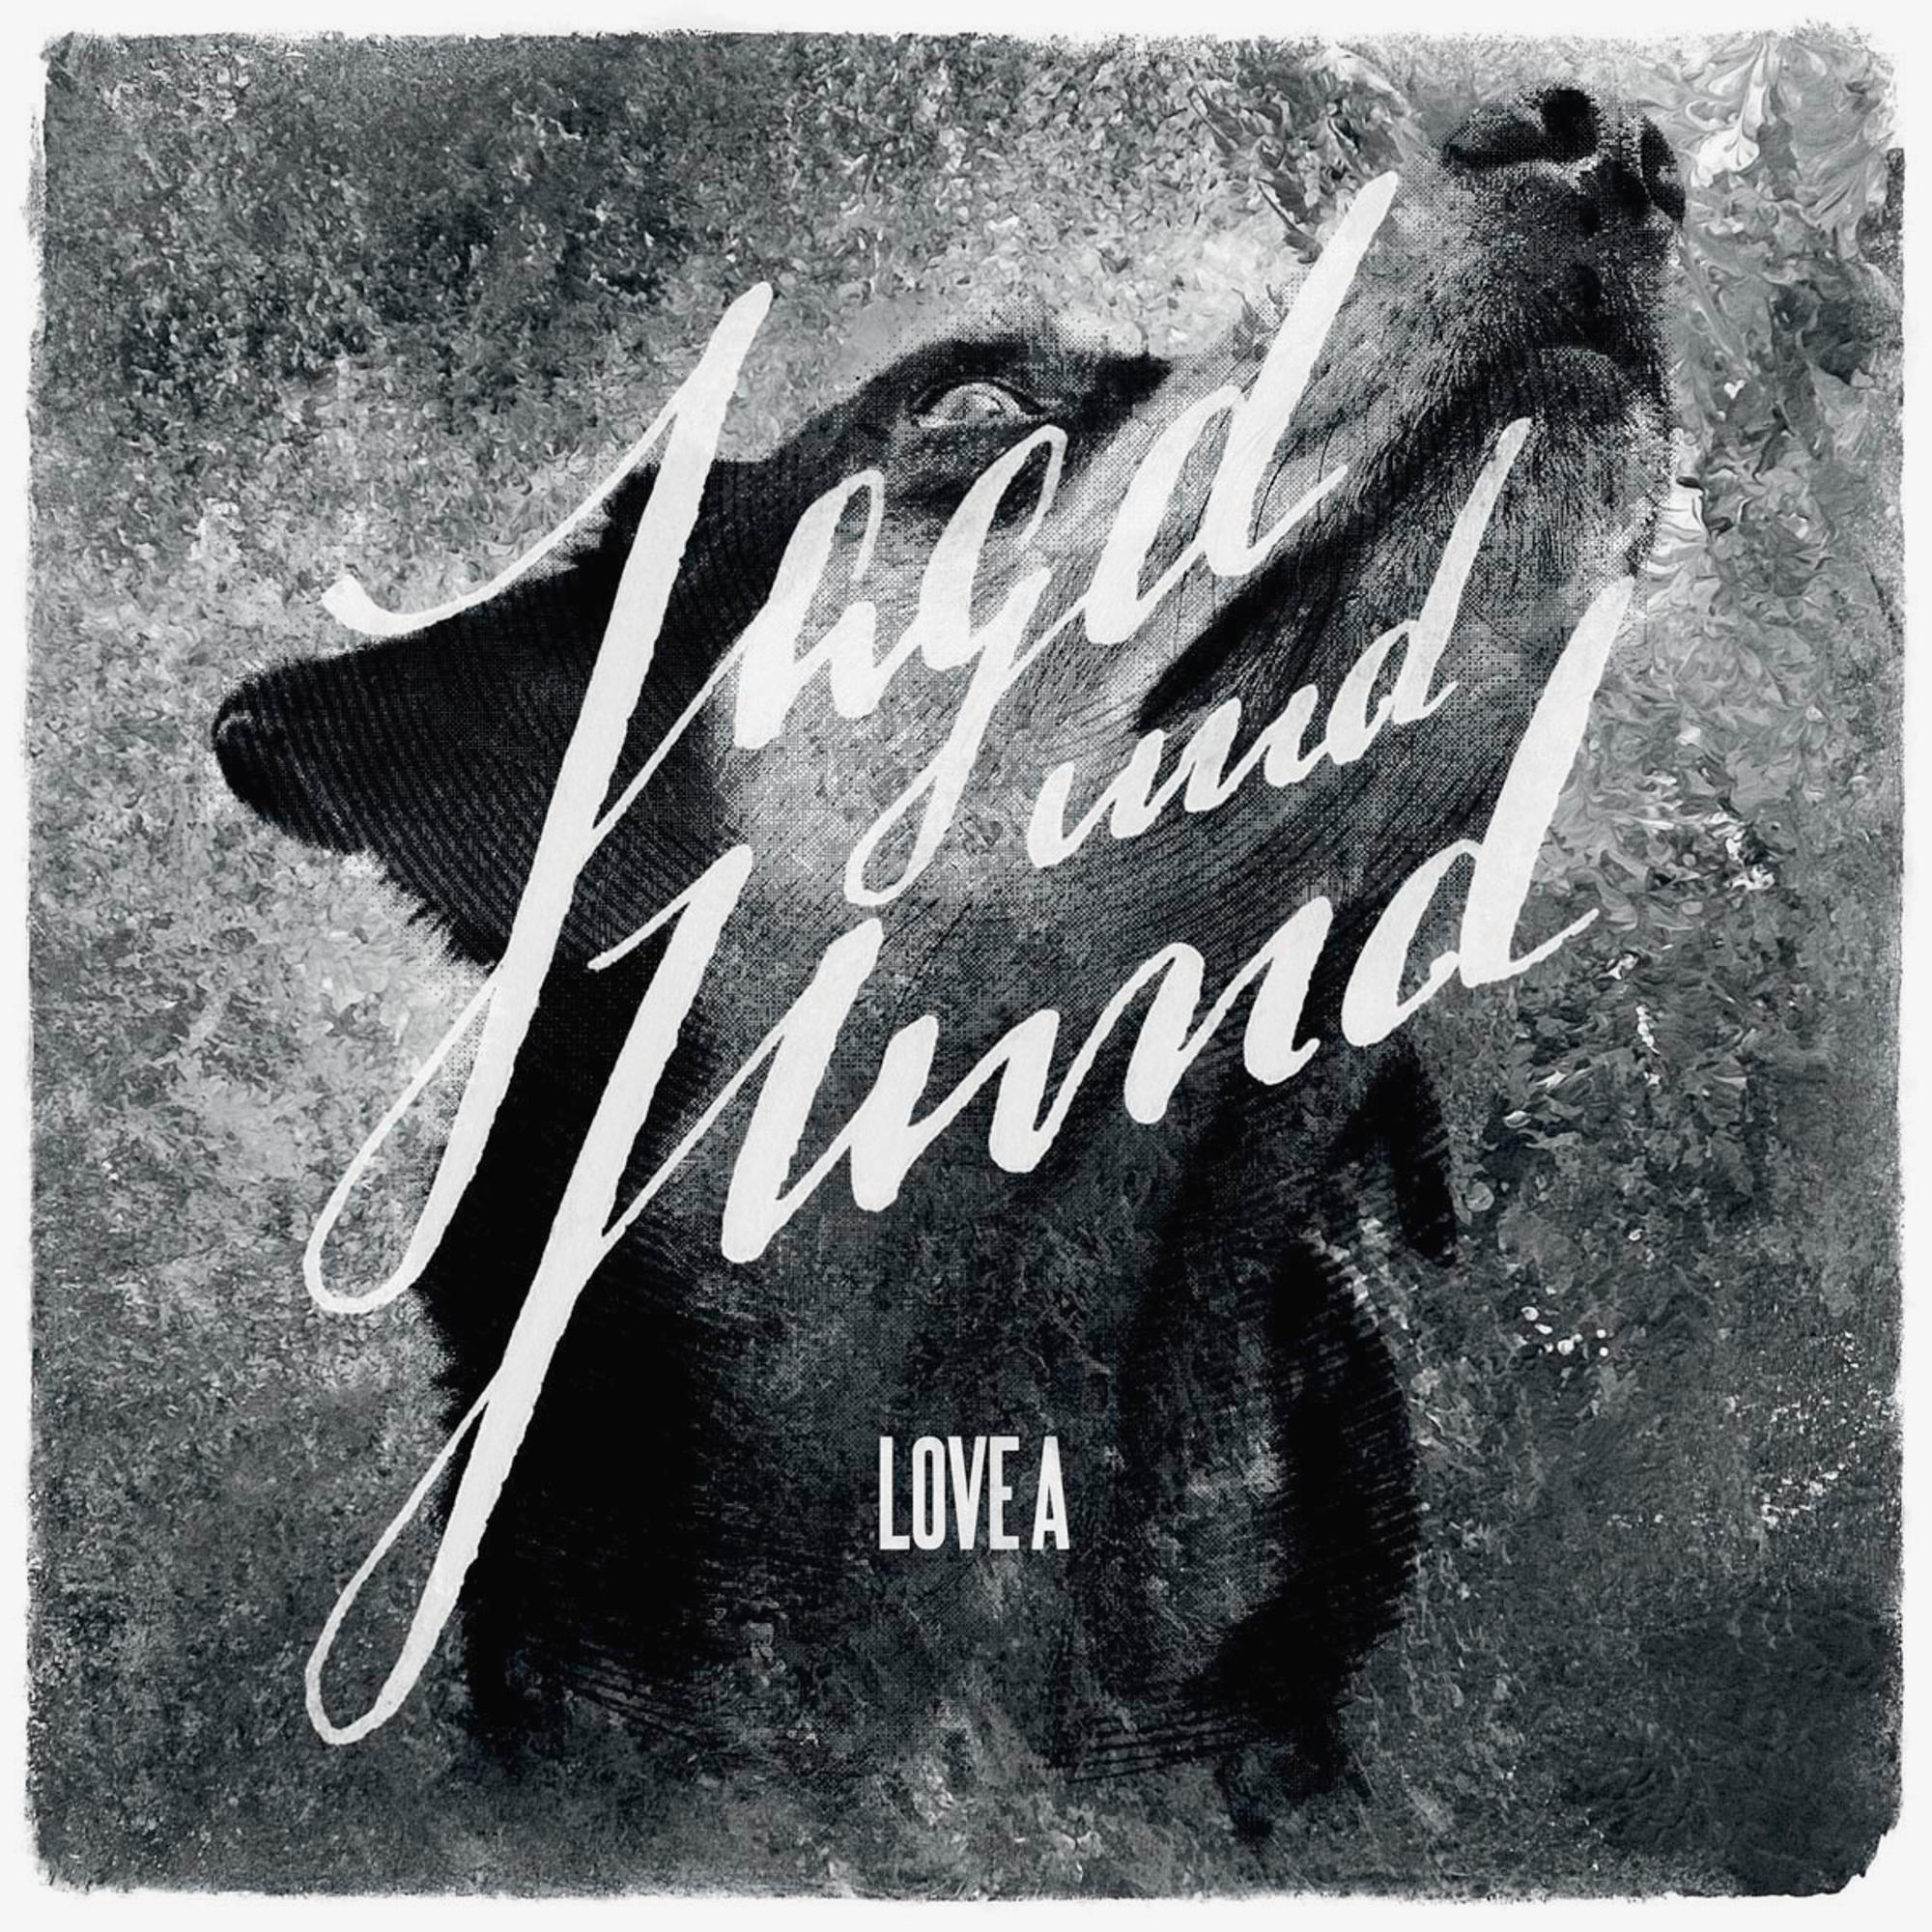 Und Hund - A (CD) - Jagd Love